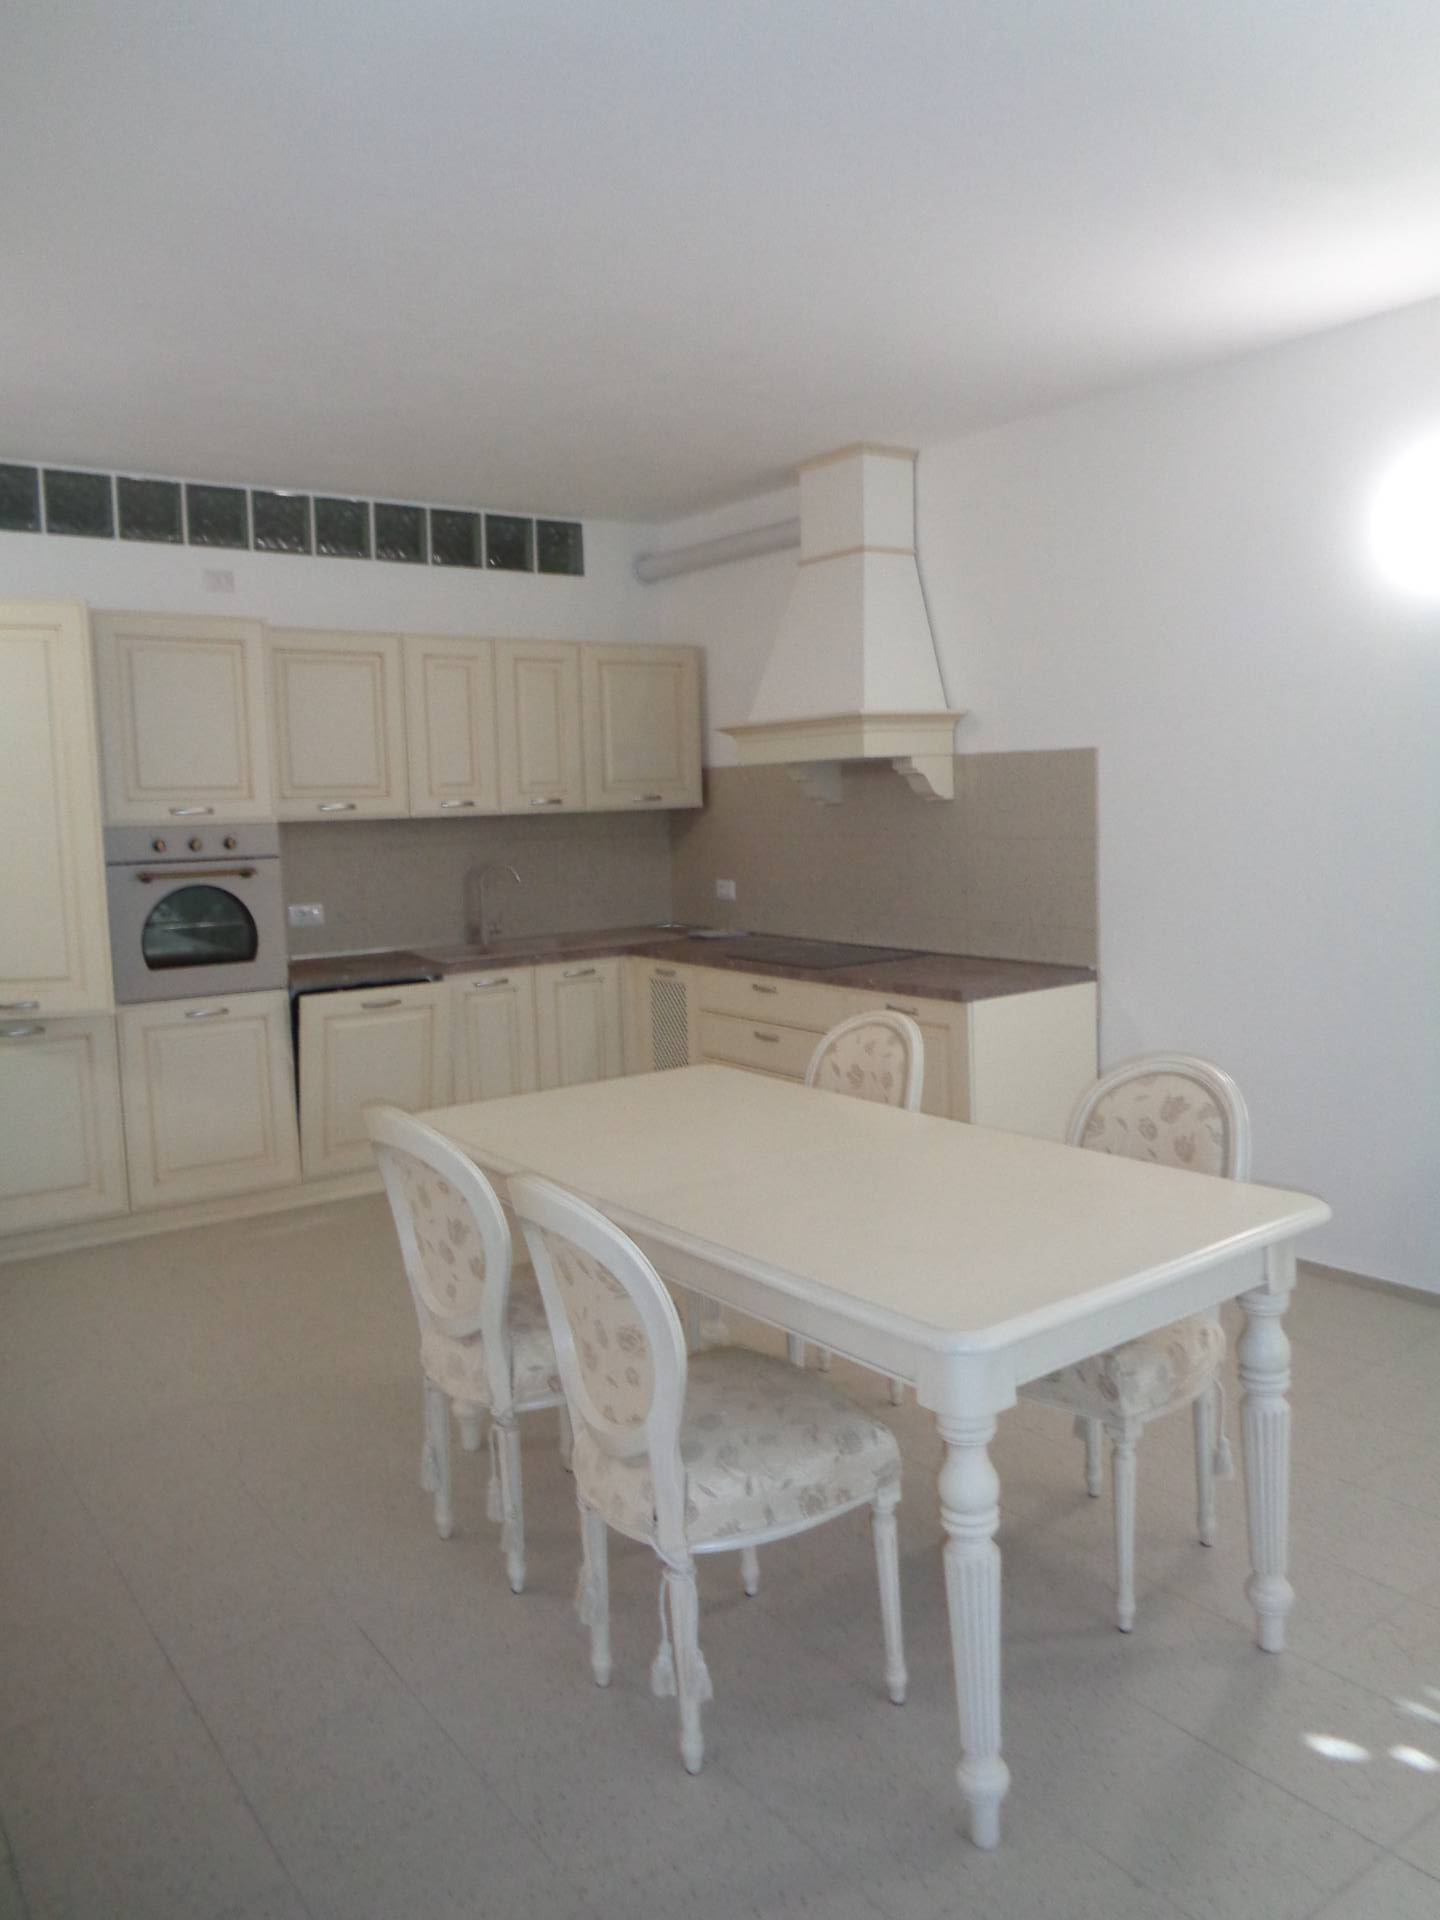 Appartamento in affitto a Longiano, 2 locali, zona Località: BudrioDiLongiano, prezzo € 700 | CambioCasa.it